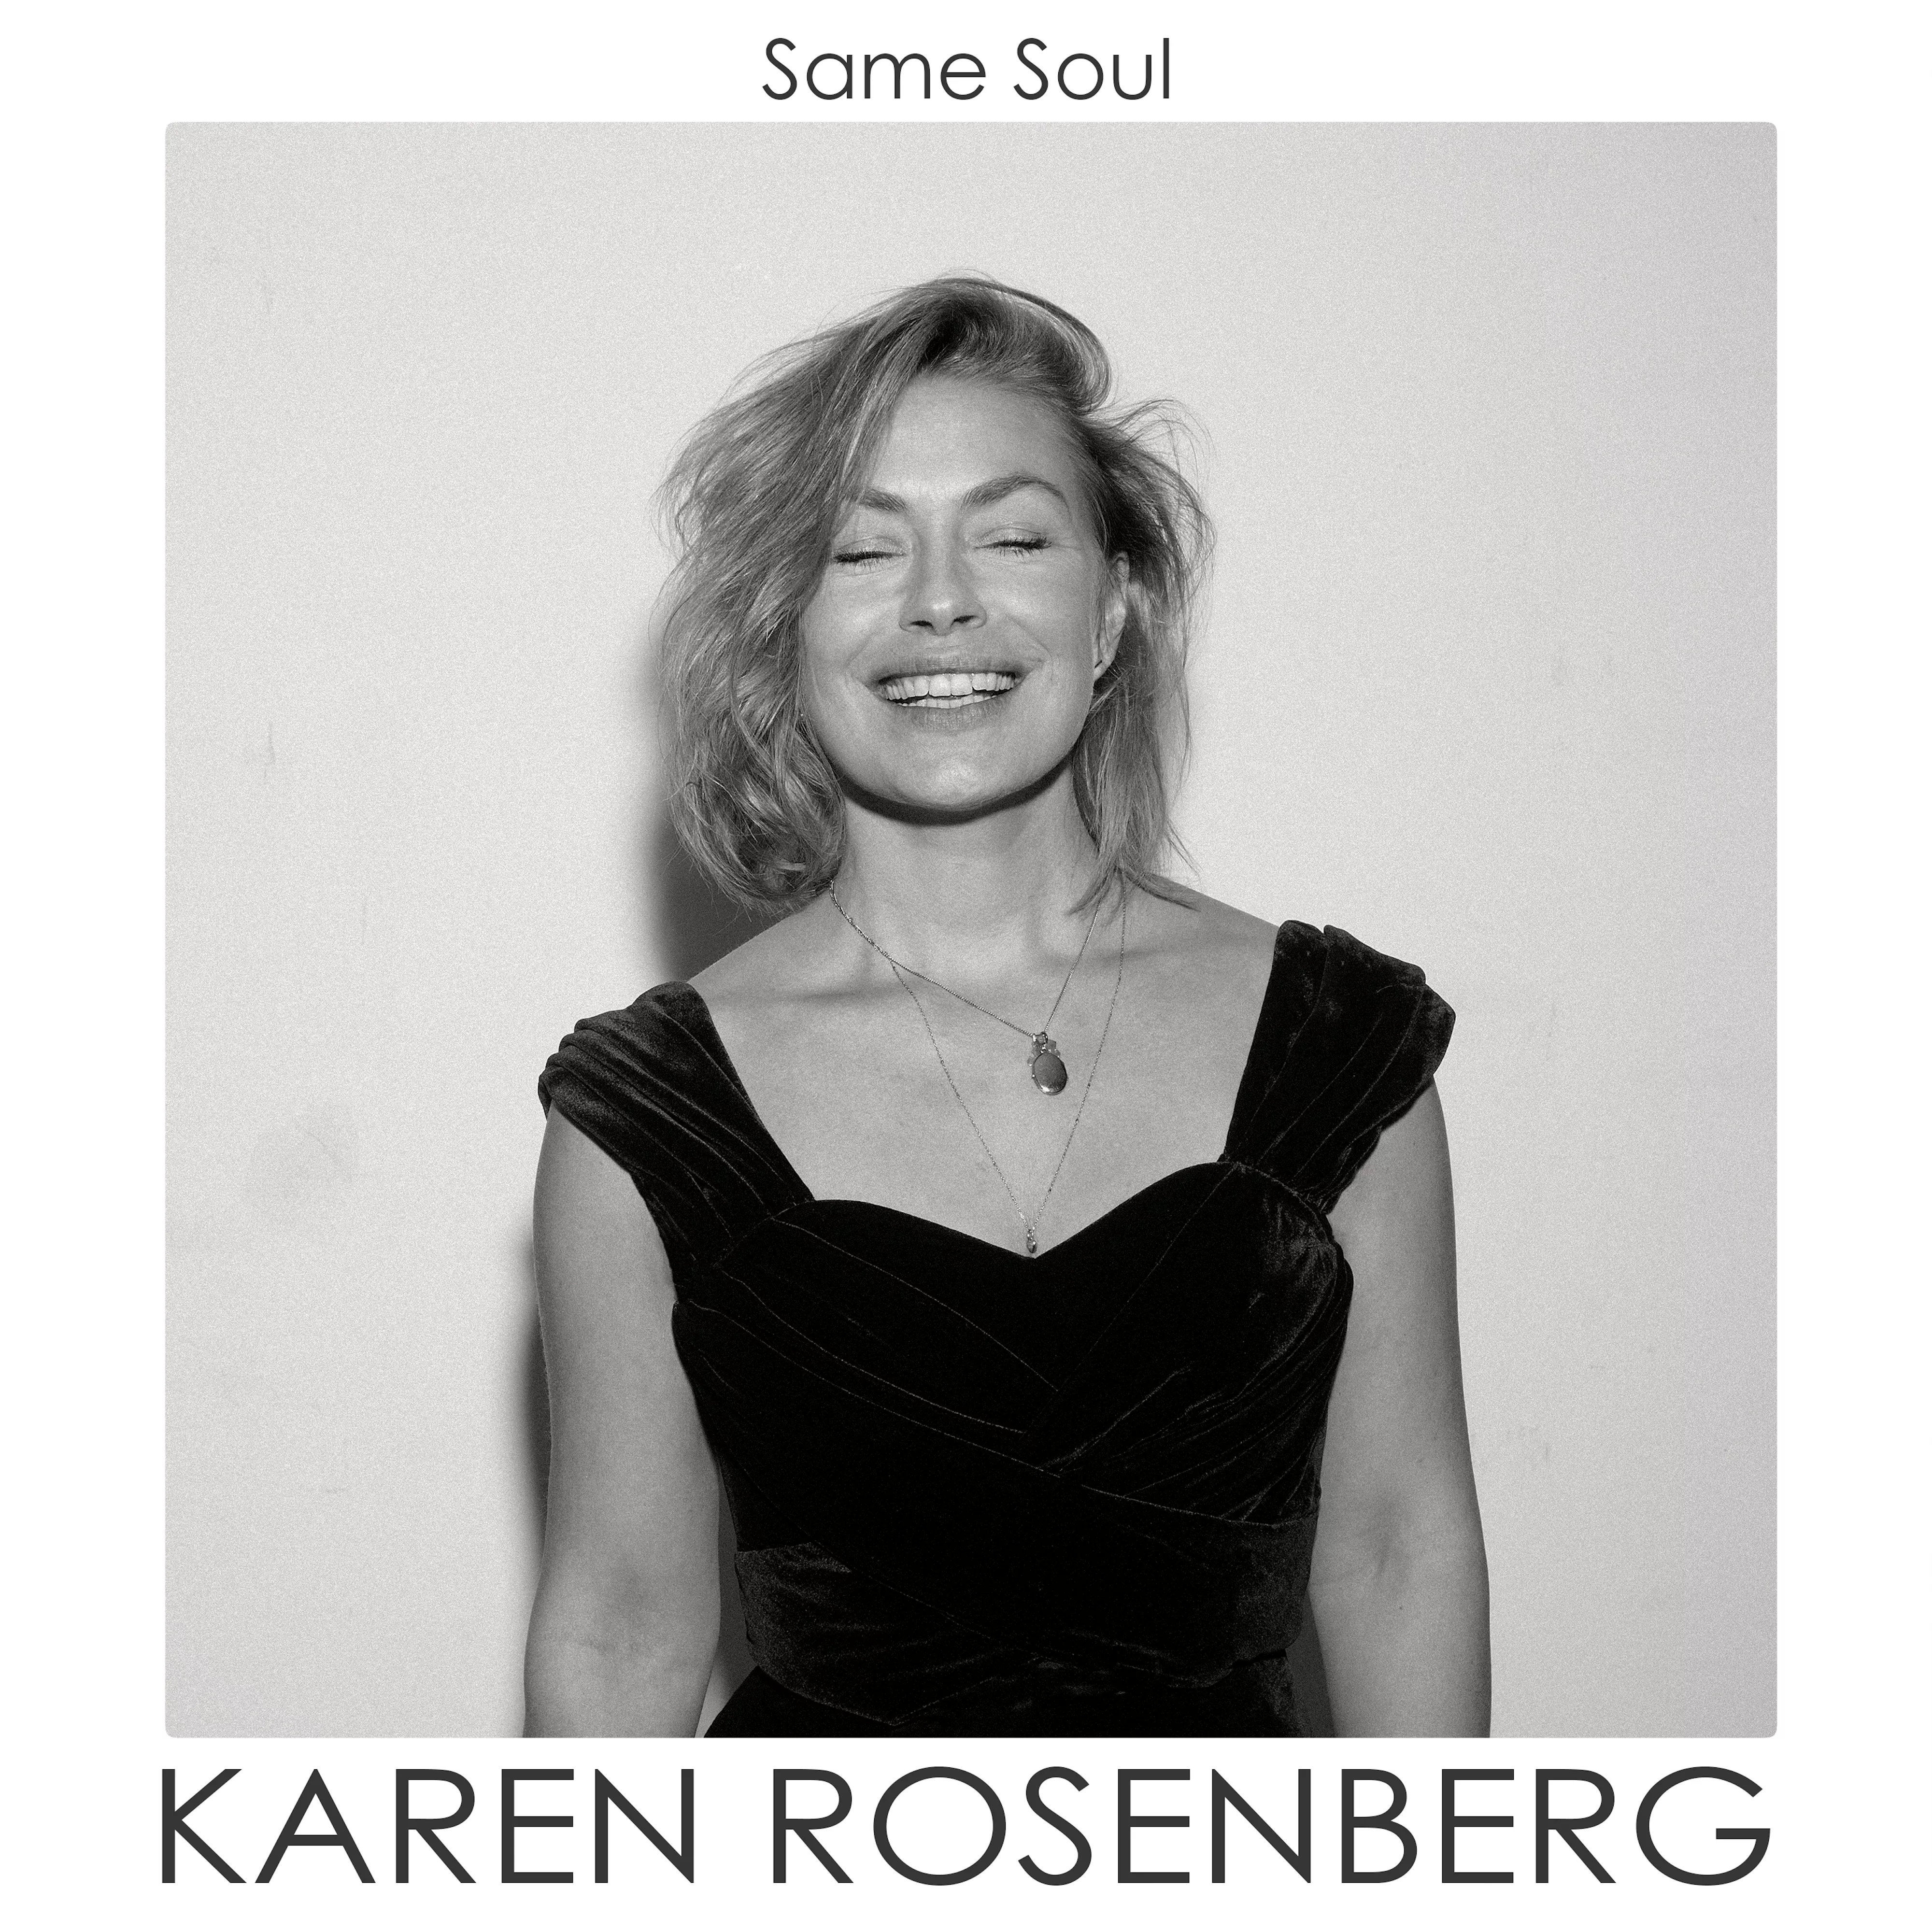 Same Soul - Karen Rosenberg